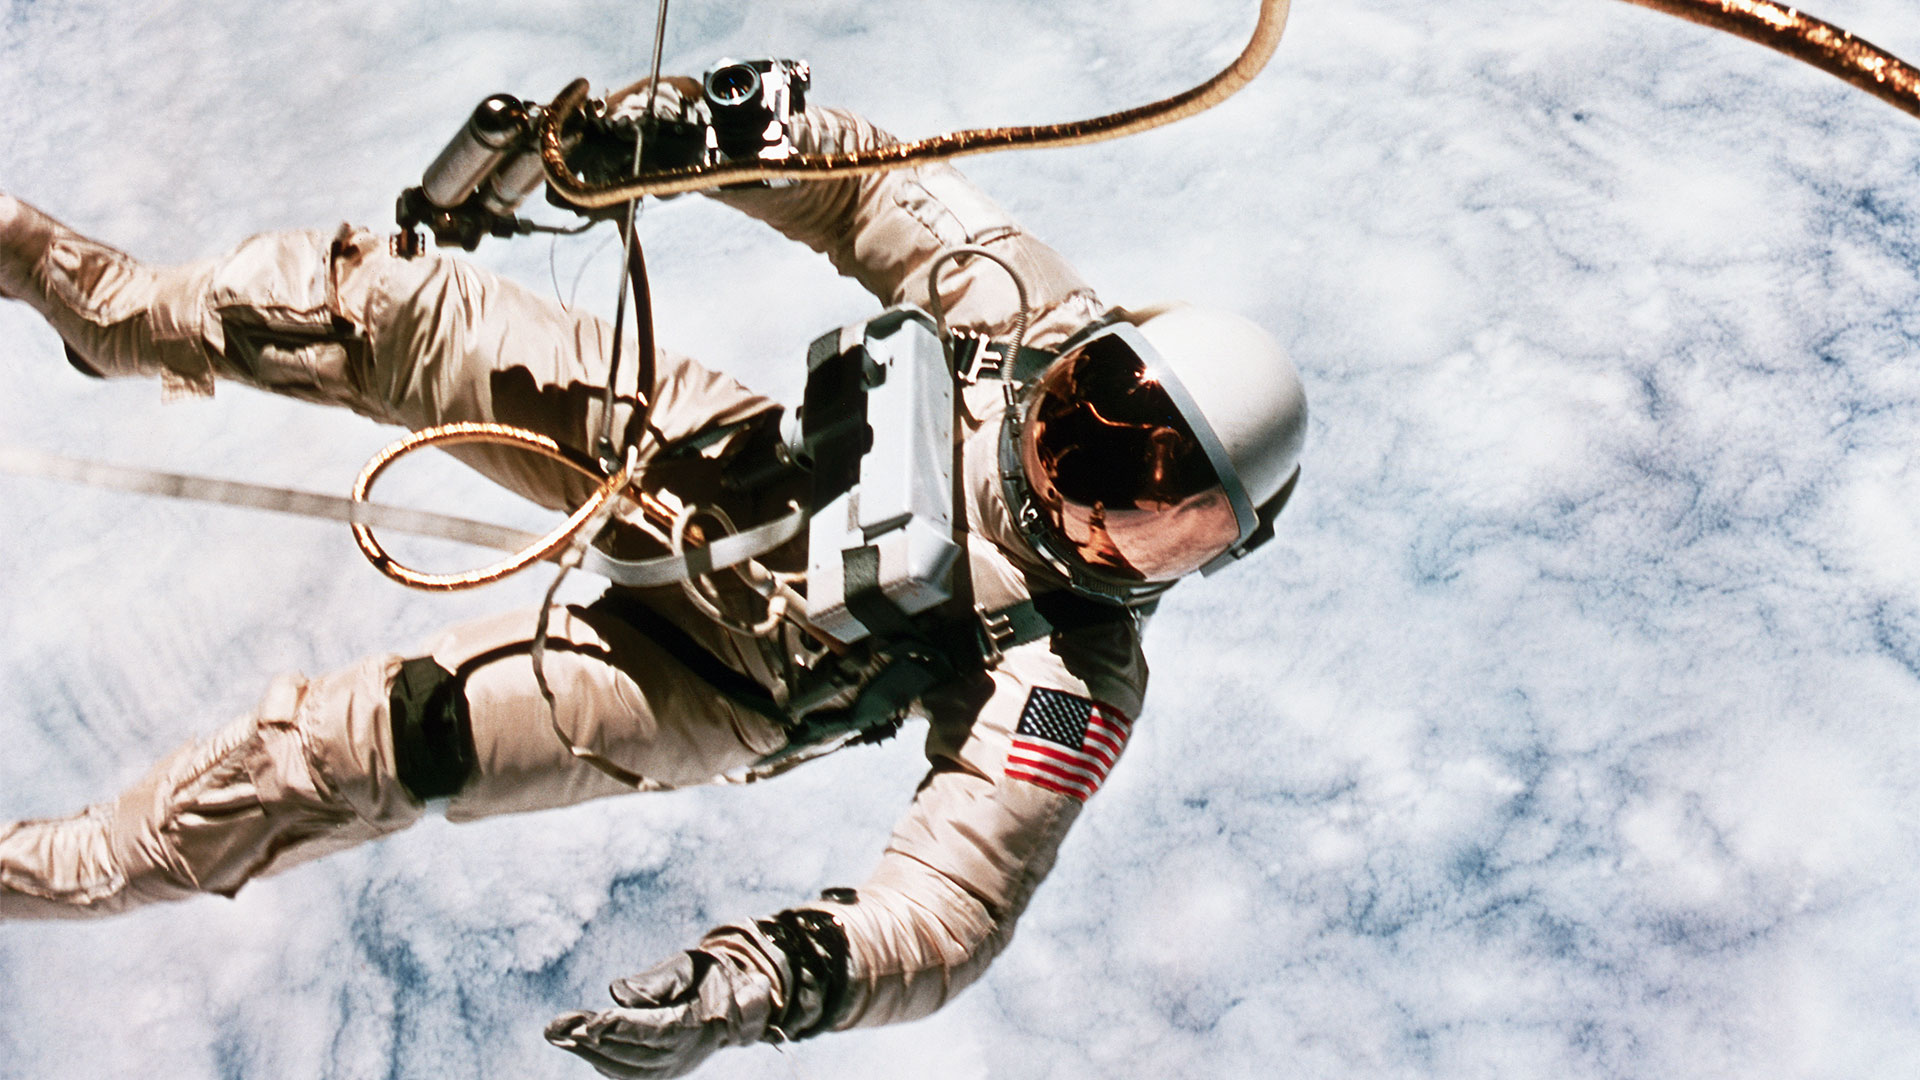 Las fotografías de White durante la caminata espacial se convirtieron en imágenes icónicas. (Jim McDivitt/NASA/Roger Ressmeyer/Corbis/VCG via Getty Images)